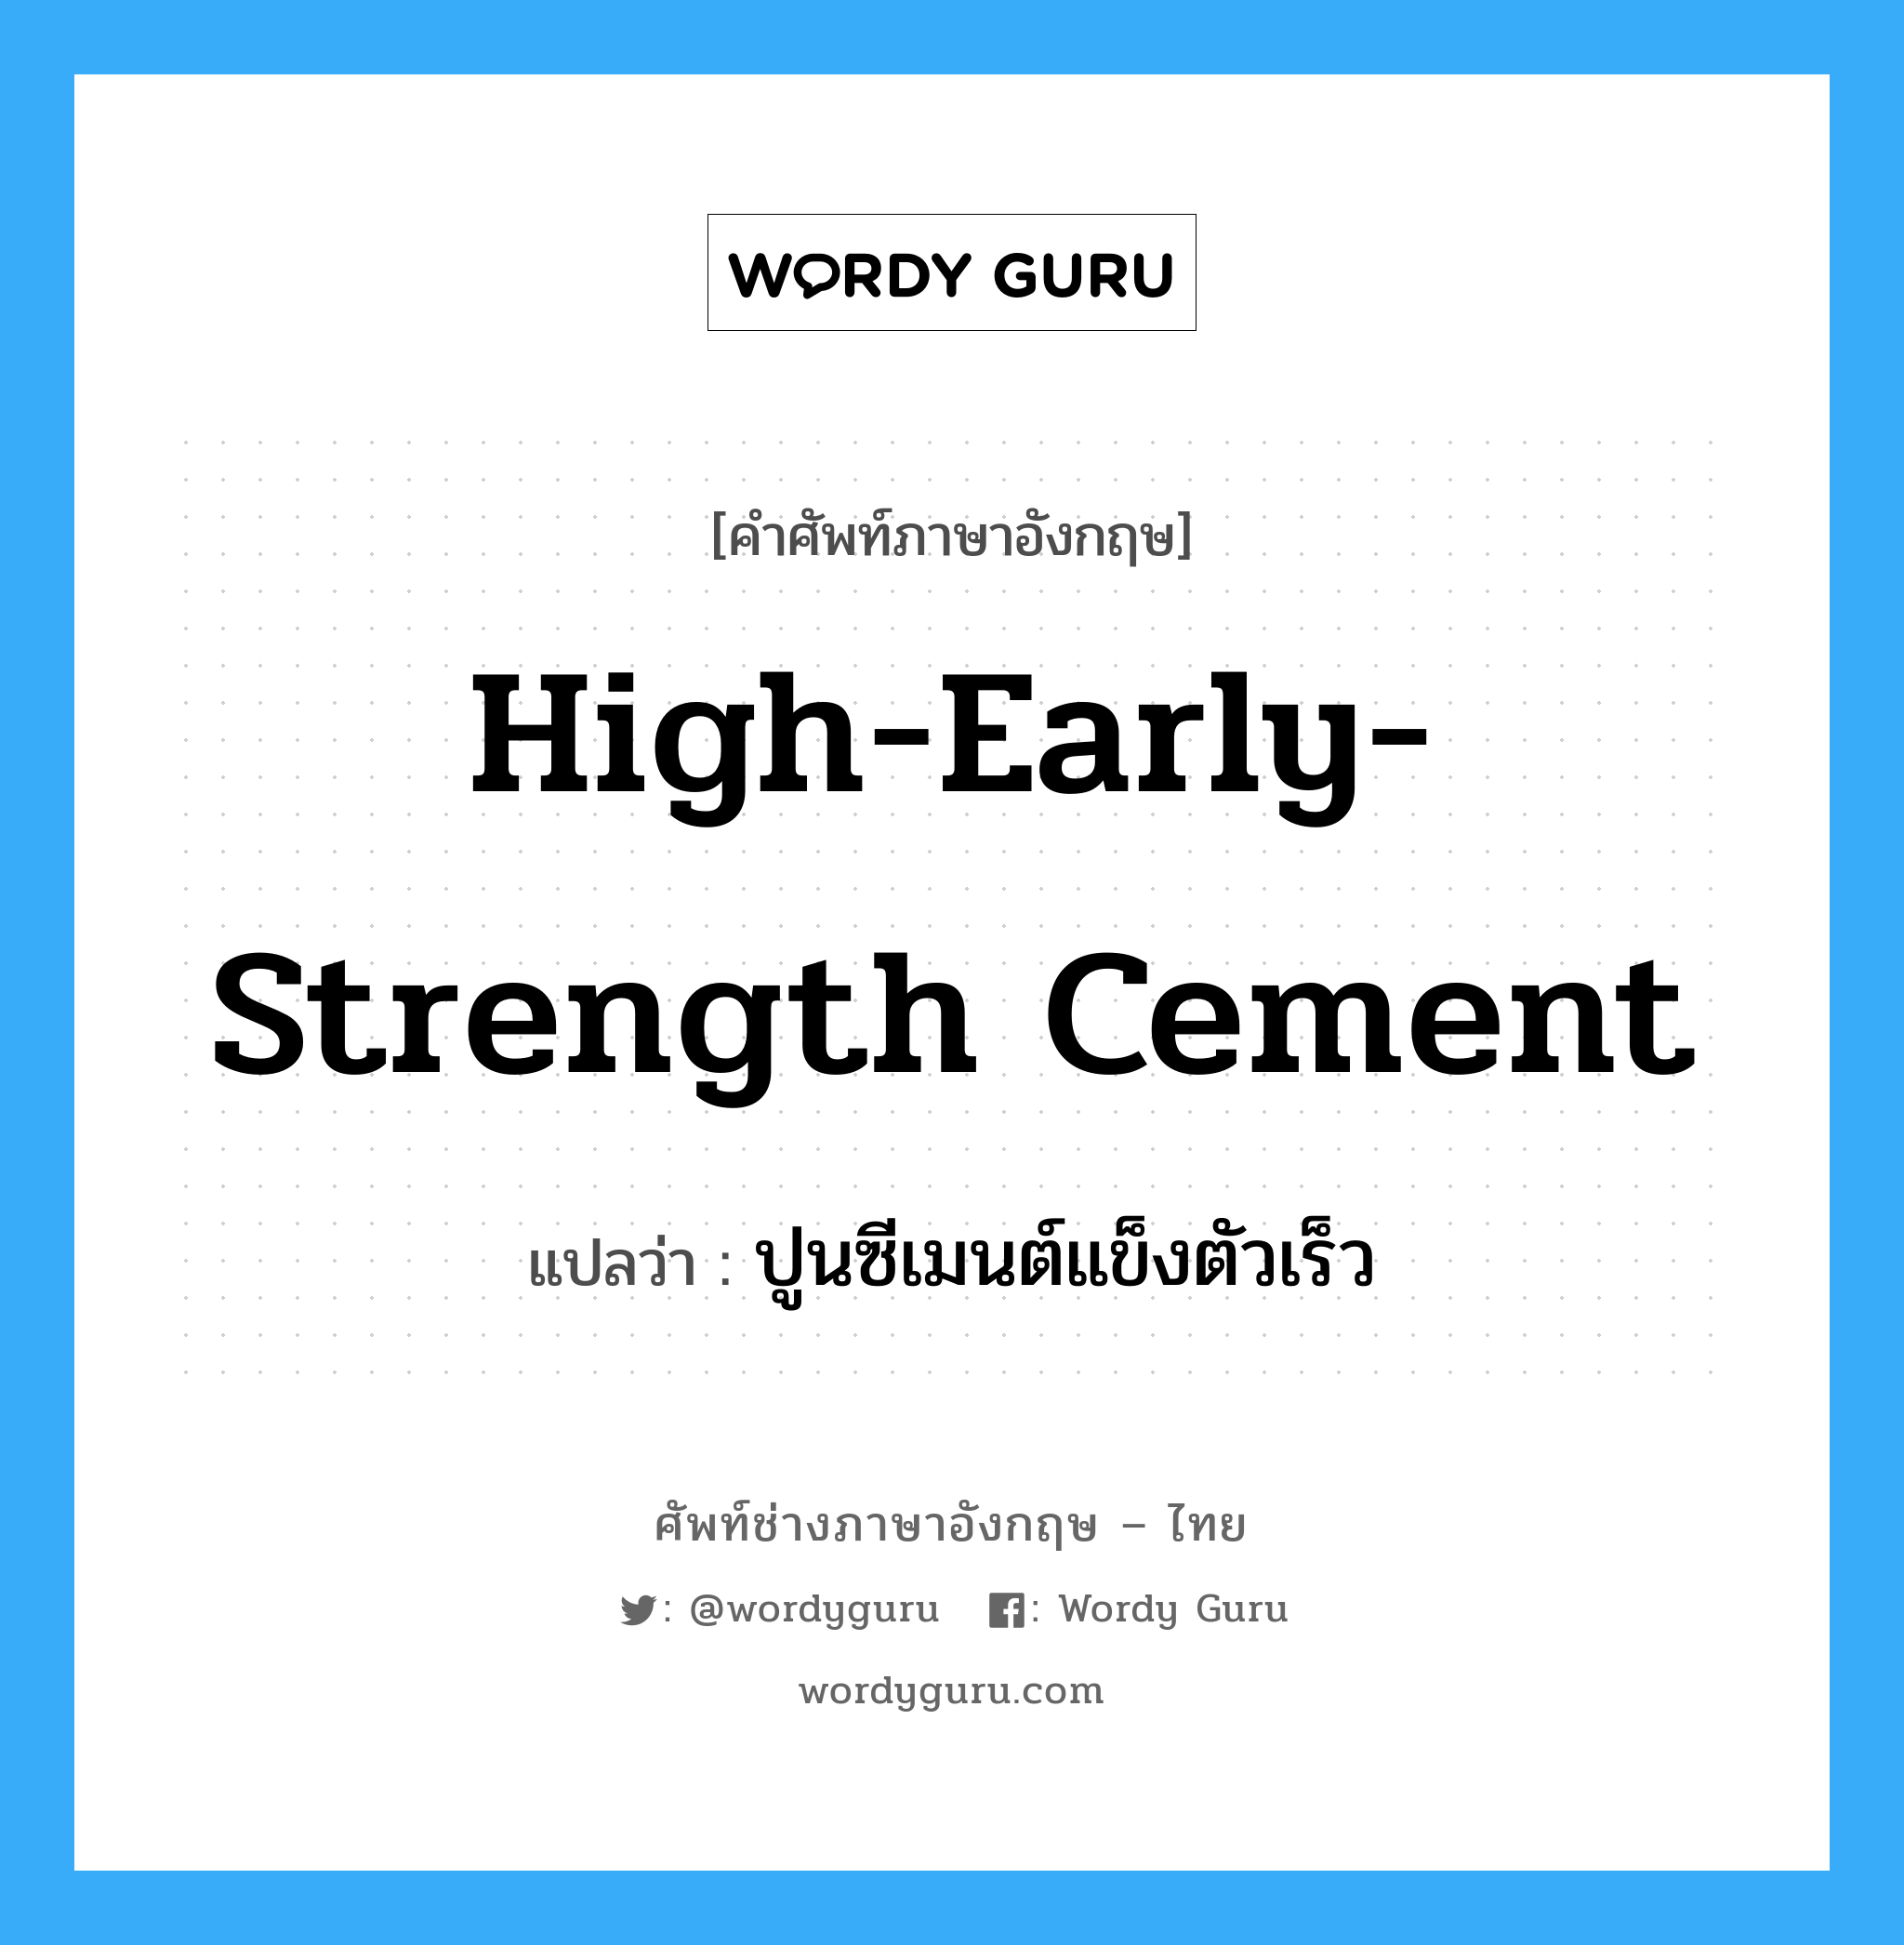 ปูนซีเมนต์แข็งตัวเร็ว ภาษาอังกฤษ?, คำศัพท์ช่างภาษาอังกฤษ - ไทย ปูนซีเมนต์แข็งตัวเร็ว คำศัพท์ภาษาอังกฤษ ปูนซีเมนต์แข็งตัวเร็ว แปลว่า high-early-strength cement